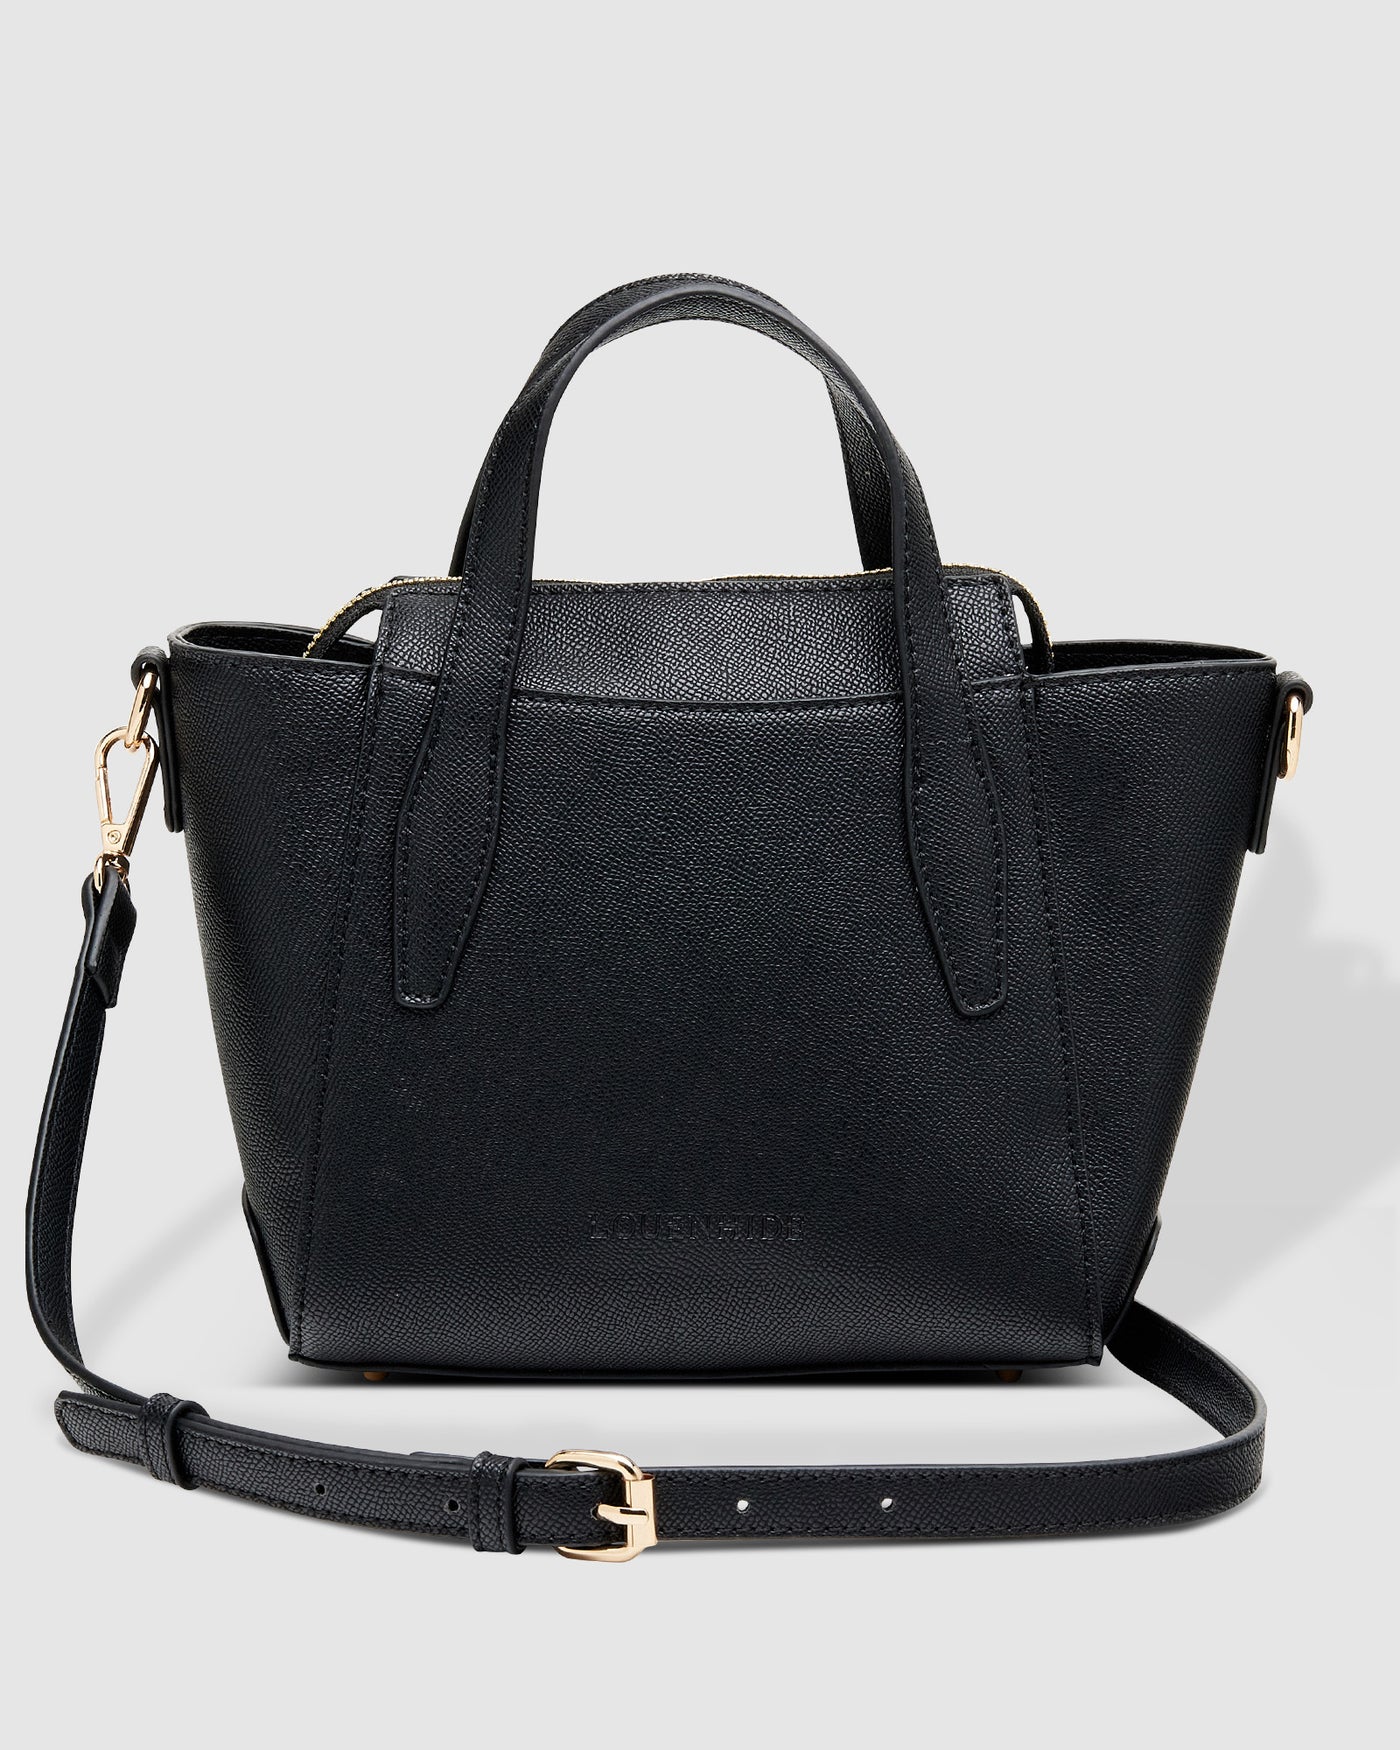 Black handbag by louenhide